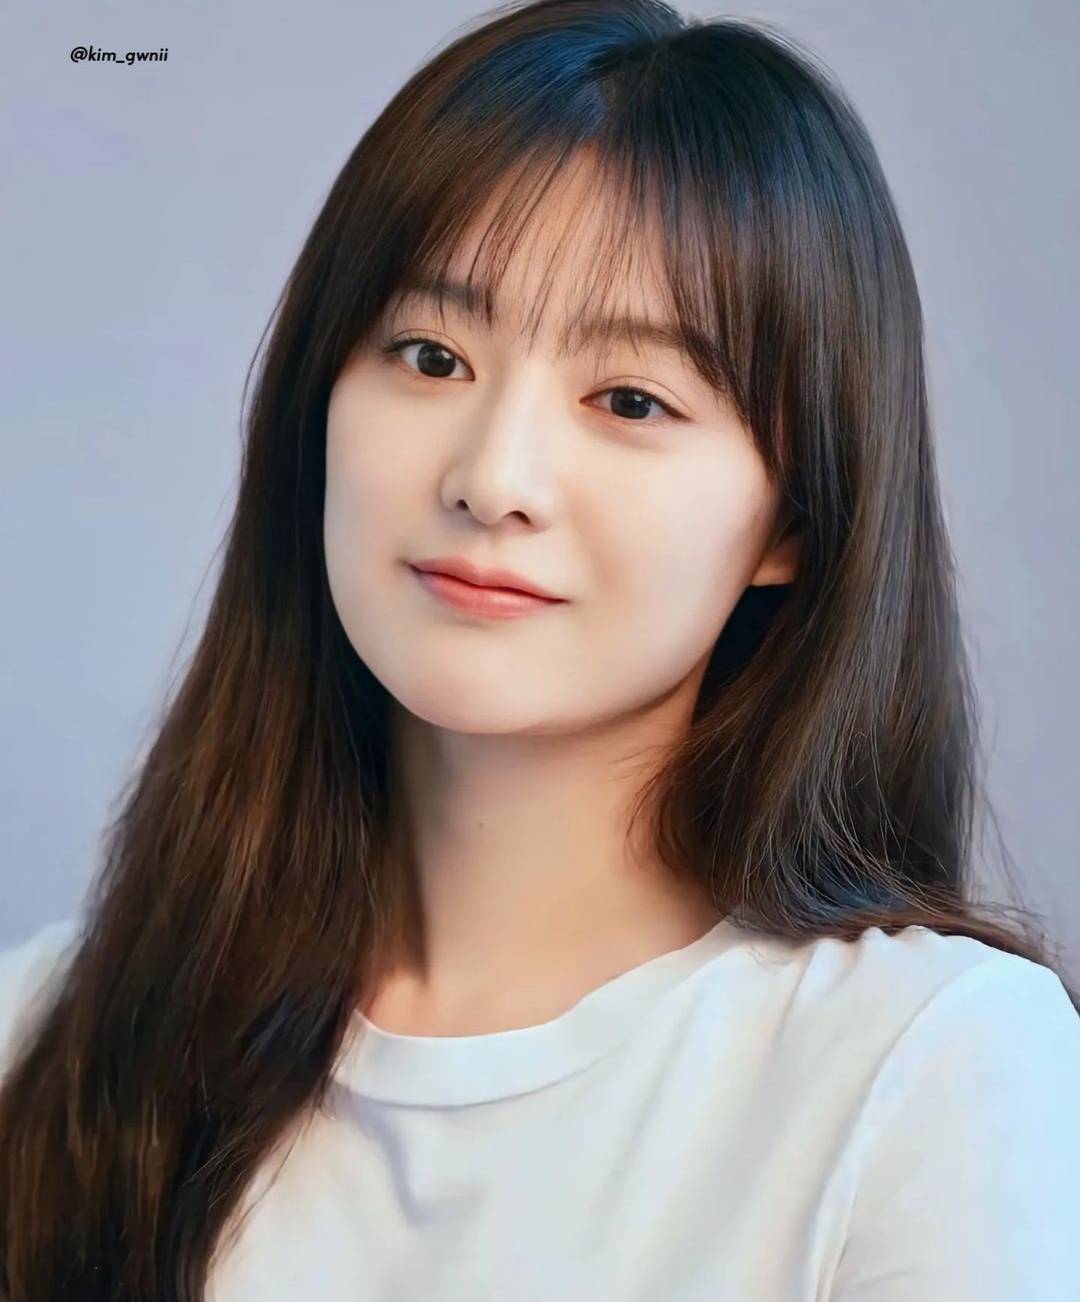 「韓國20代最可愛女演員」票選中榮獲第三名--金智媛 - 亞洲美女 -